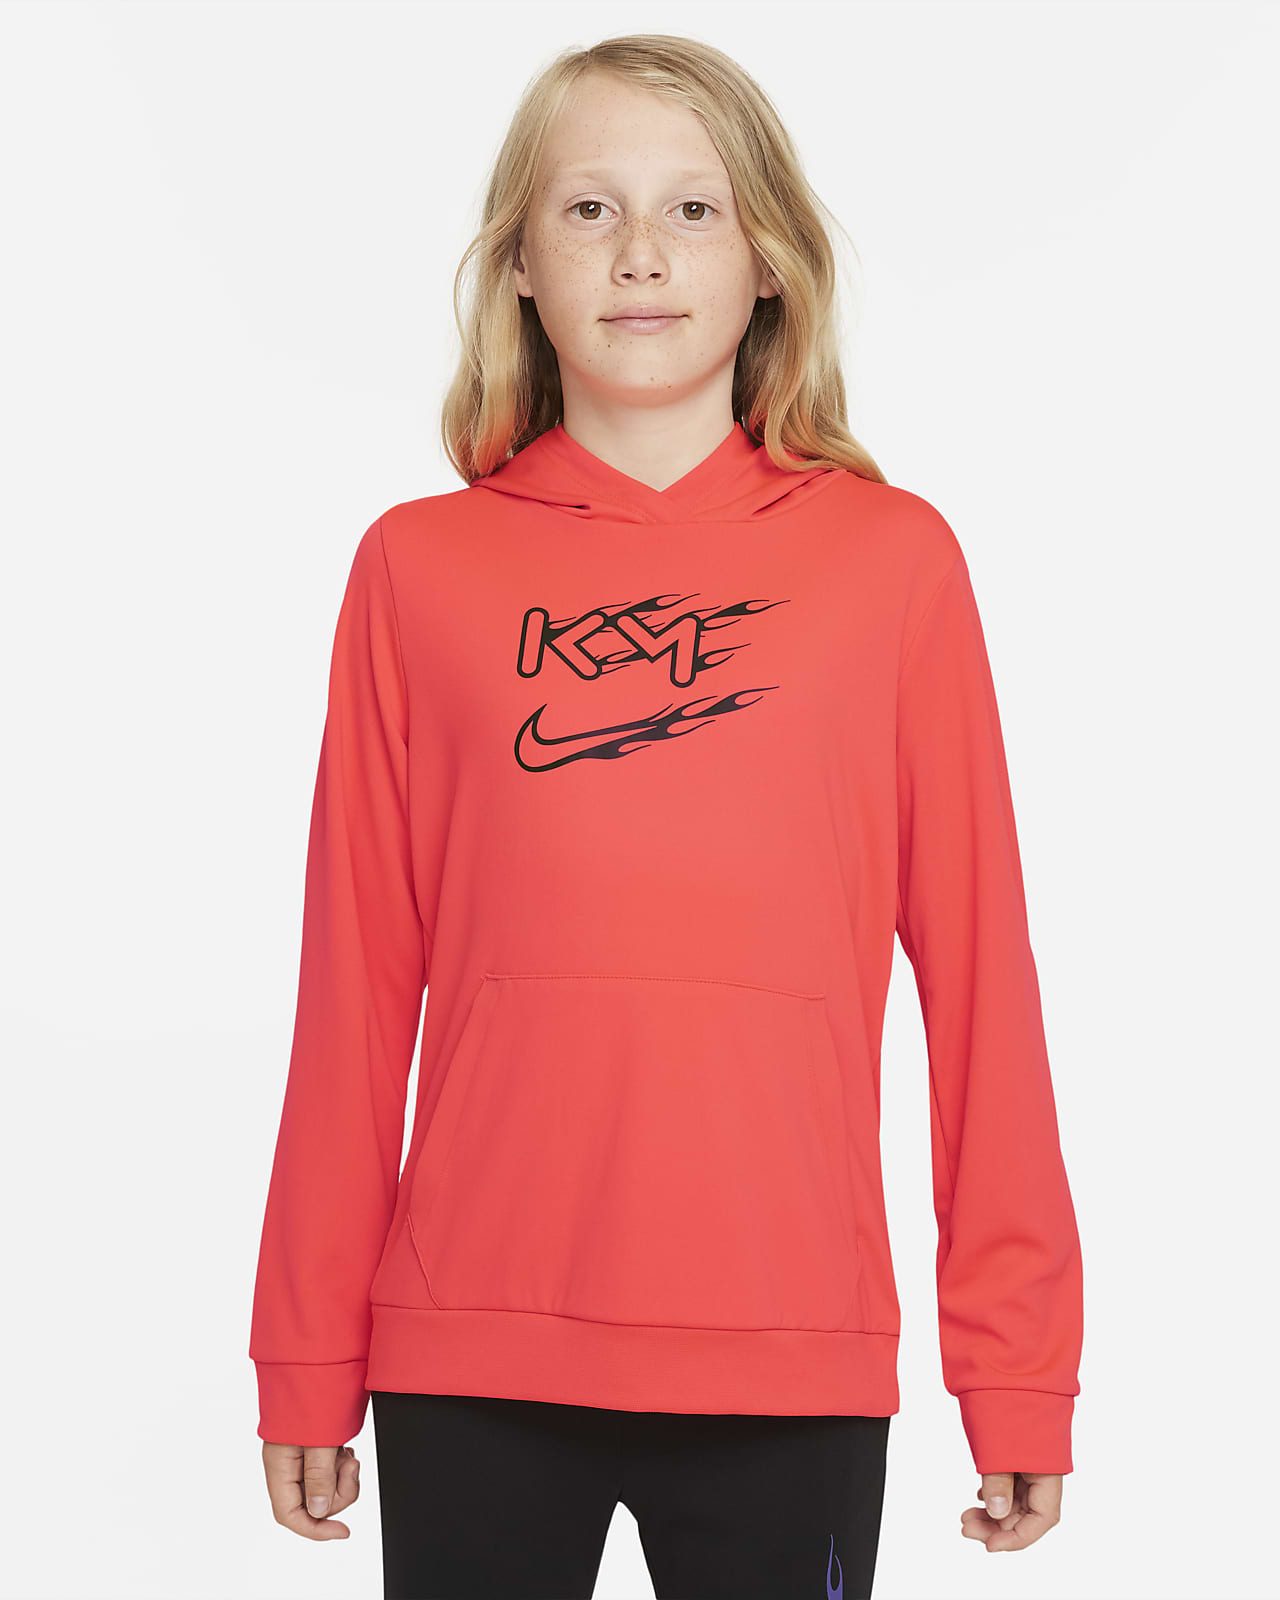 Bluza piłkarska z kapturem dla dużych dzieci Nike Dri-FIT Kylian Mbappé